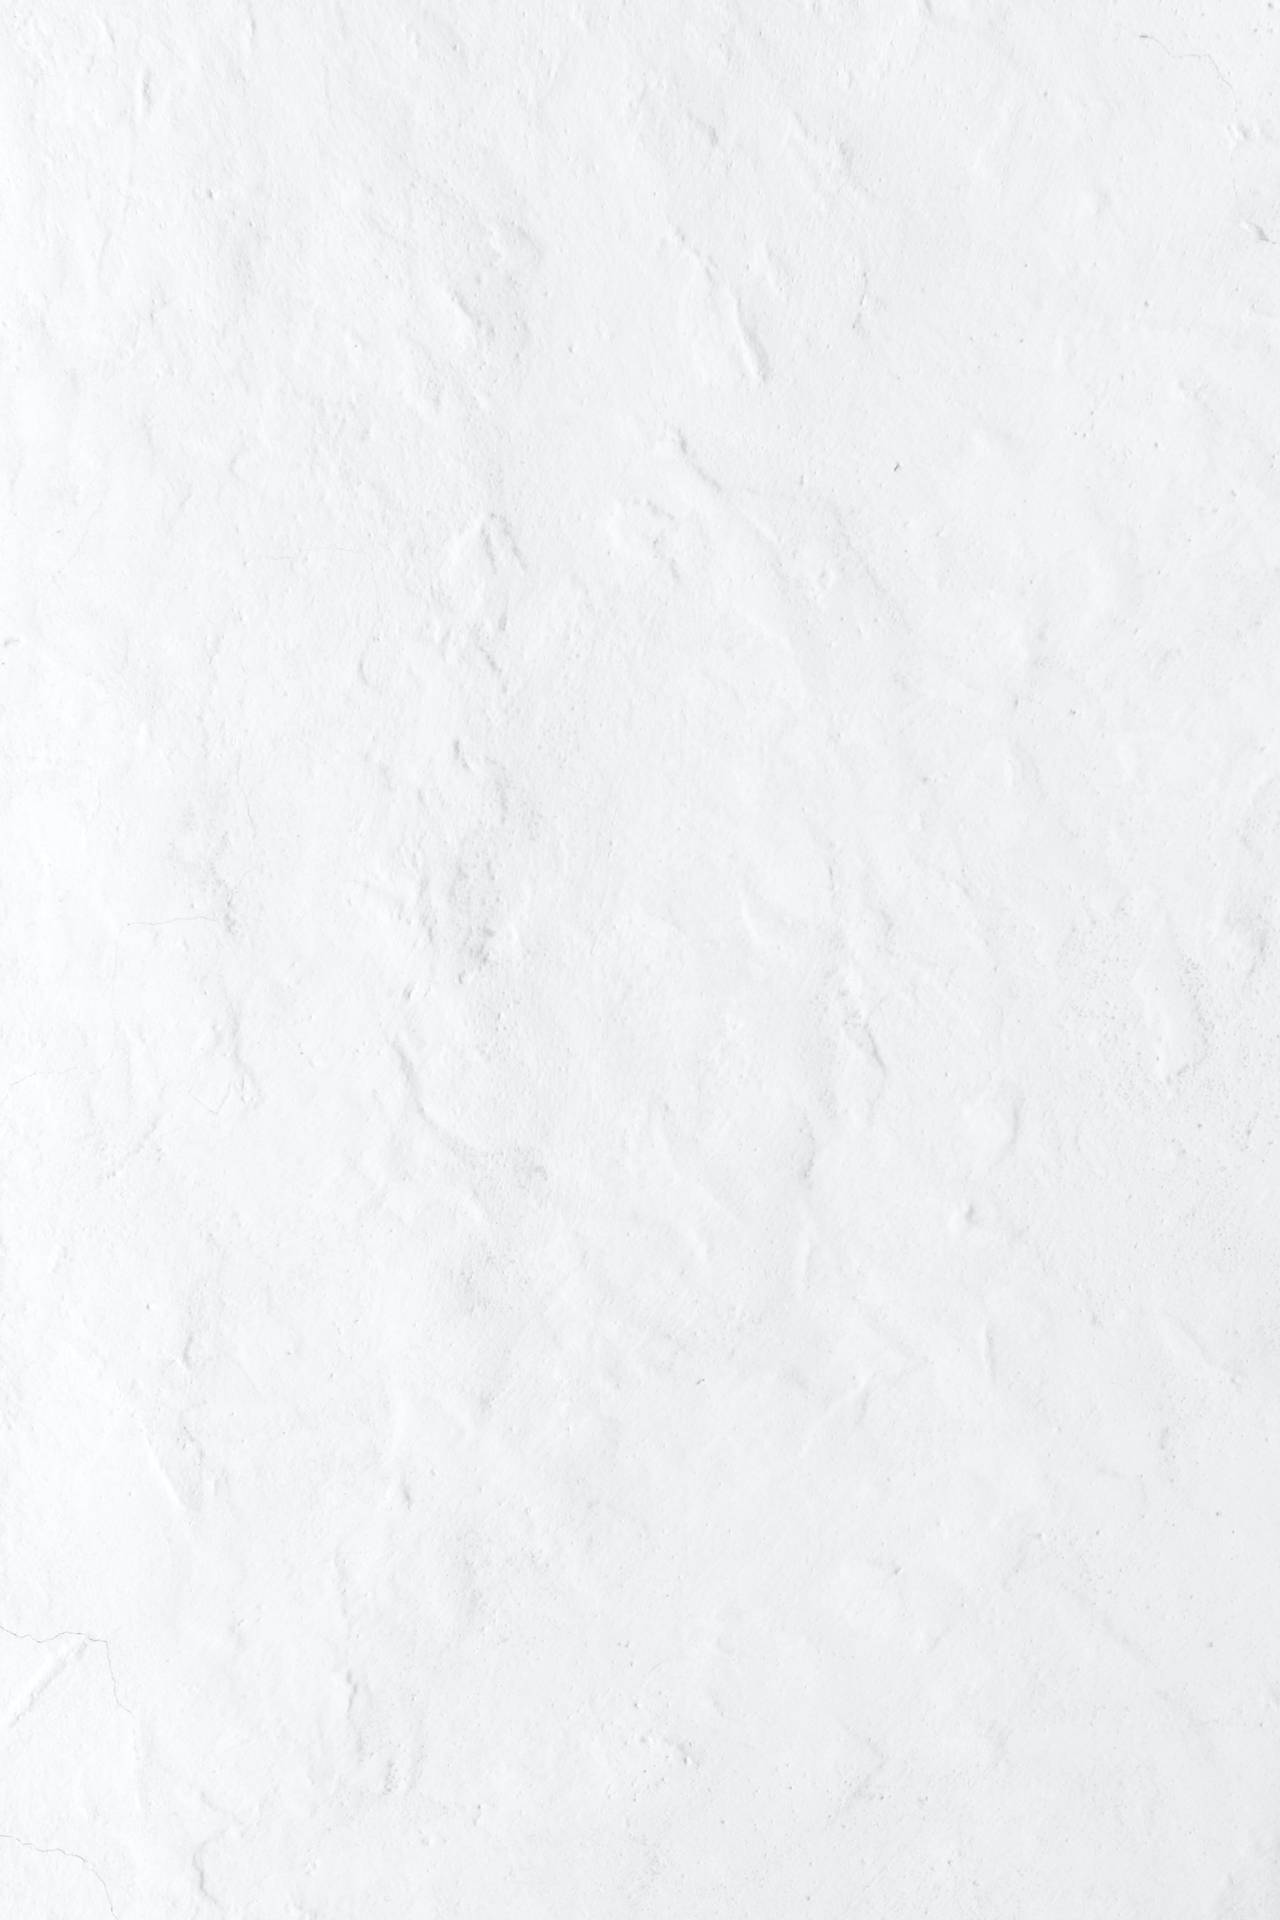 Tekstureret Ren Hvid Væg Wallpaper